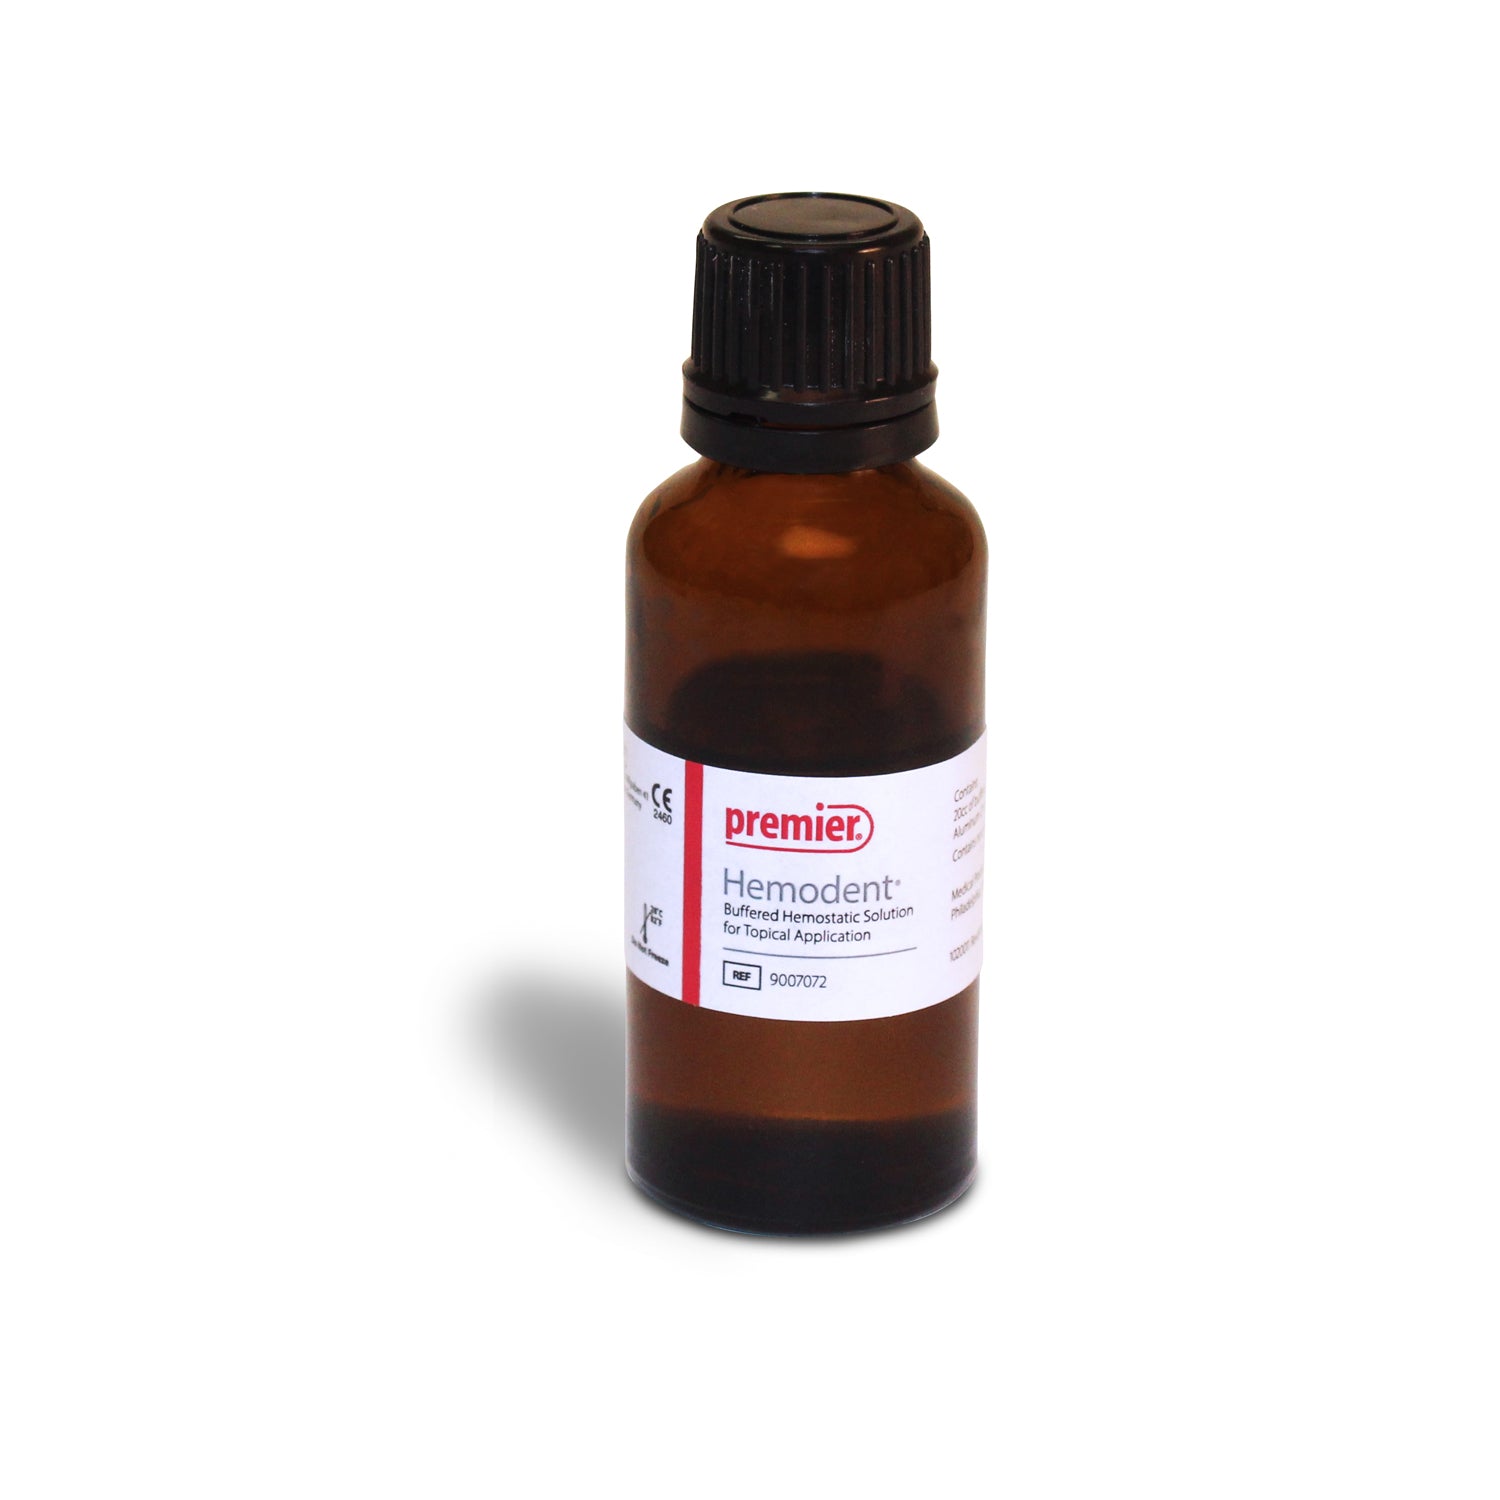 premier-hemodent-liquid-aluminum-chloride-without-epinephrine